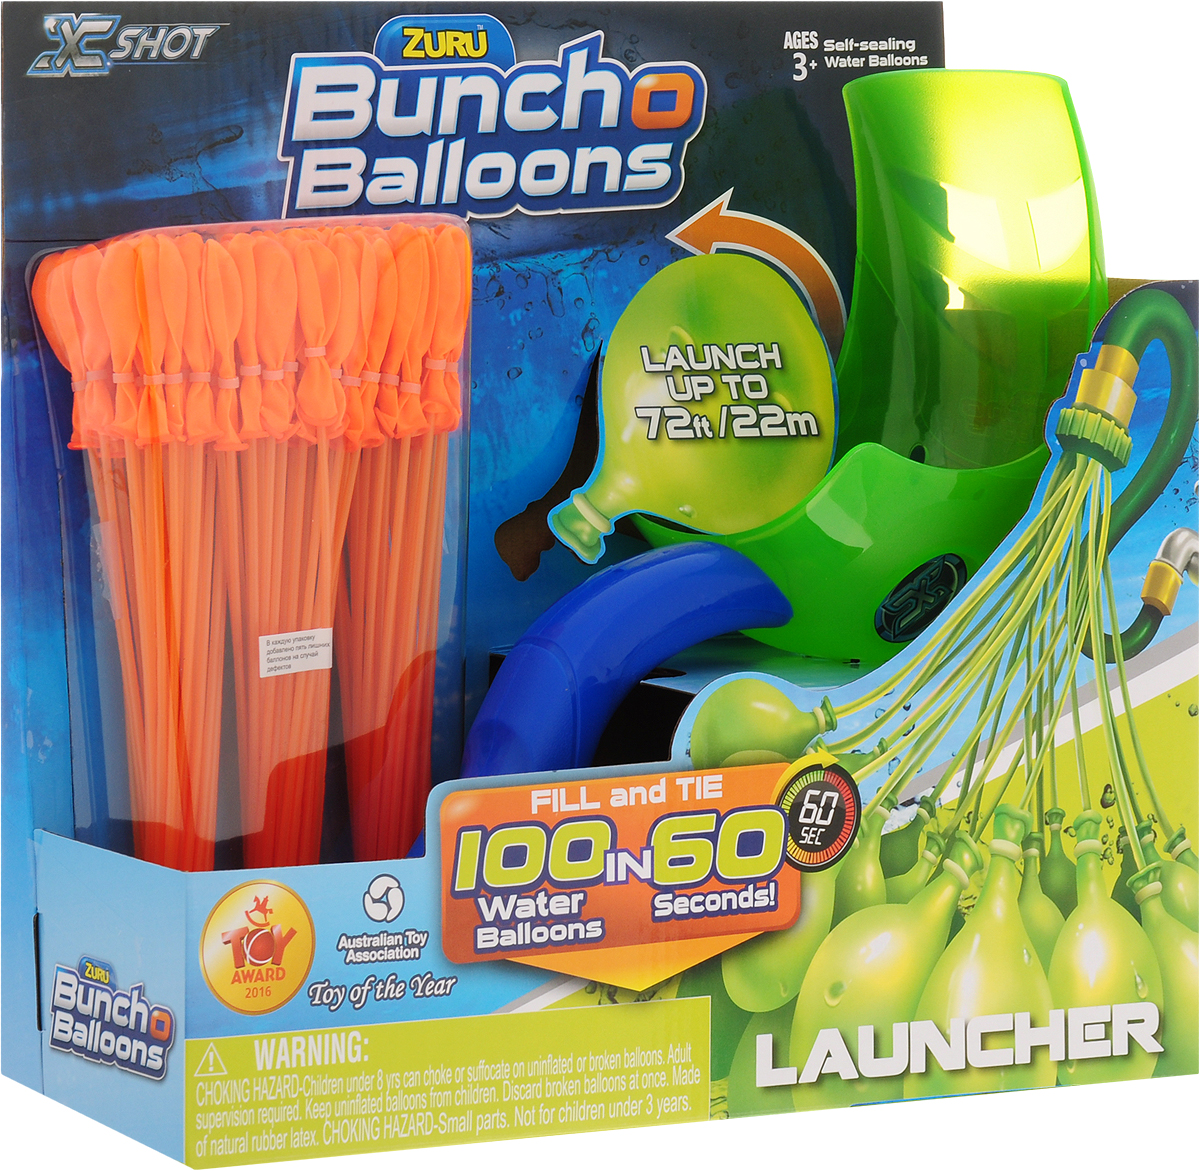 Zuru Водяное оружие Bunch O Balloons с пусковым устройством цвет зеленый оранжевый